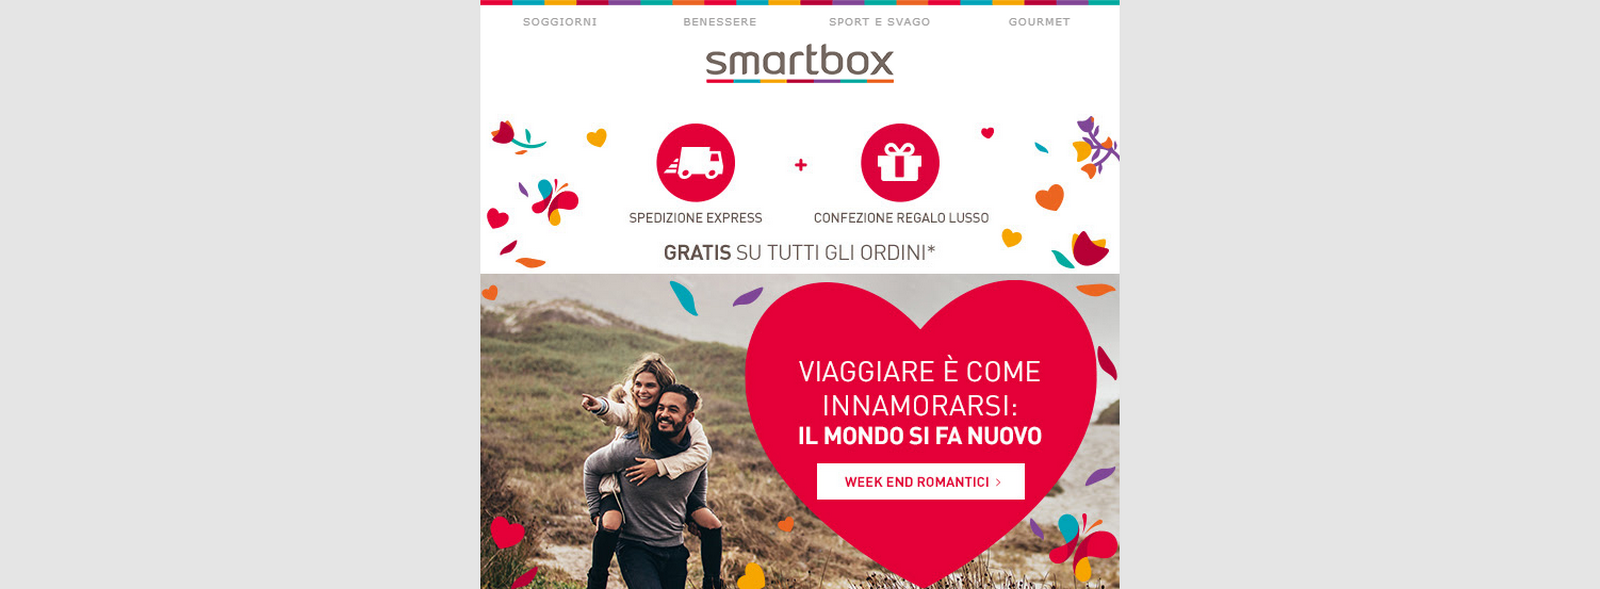 Smartbox febbraio 2019, codice sconto 8%